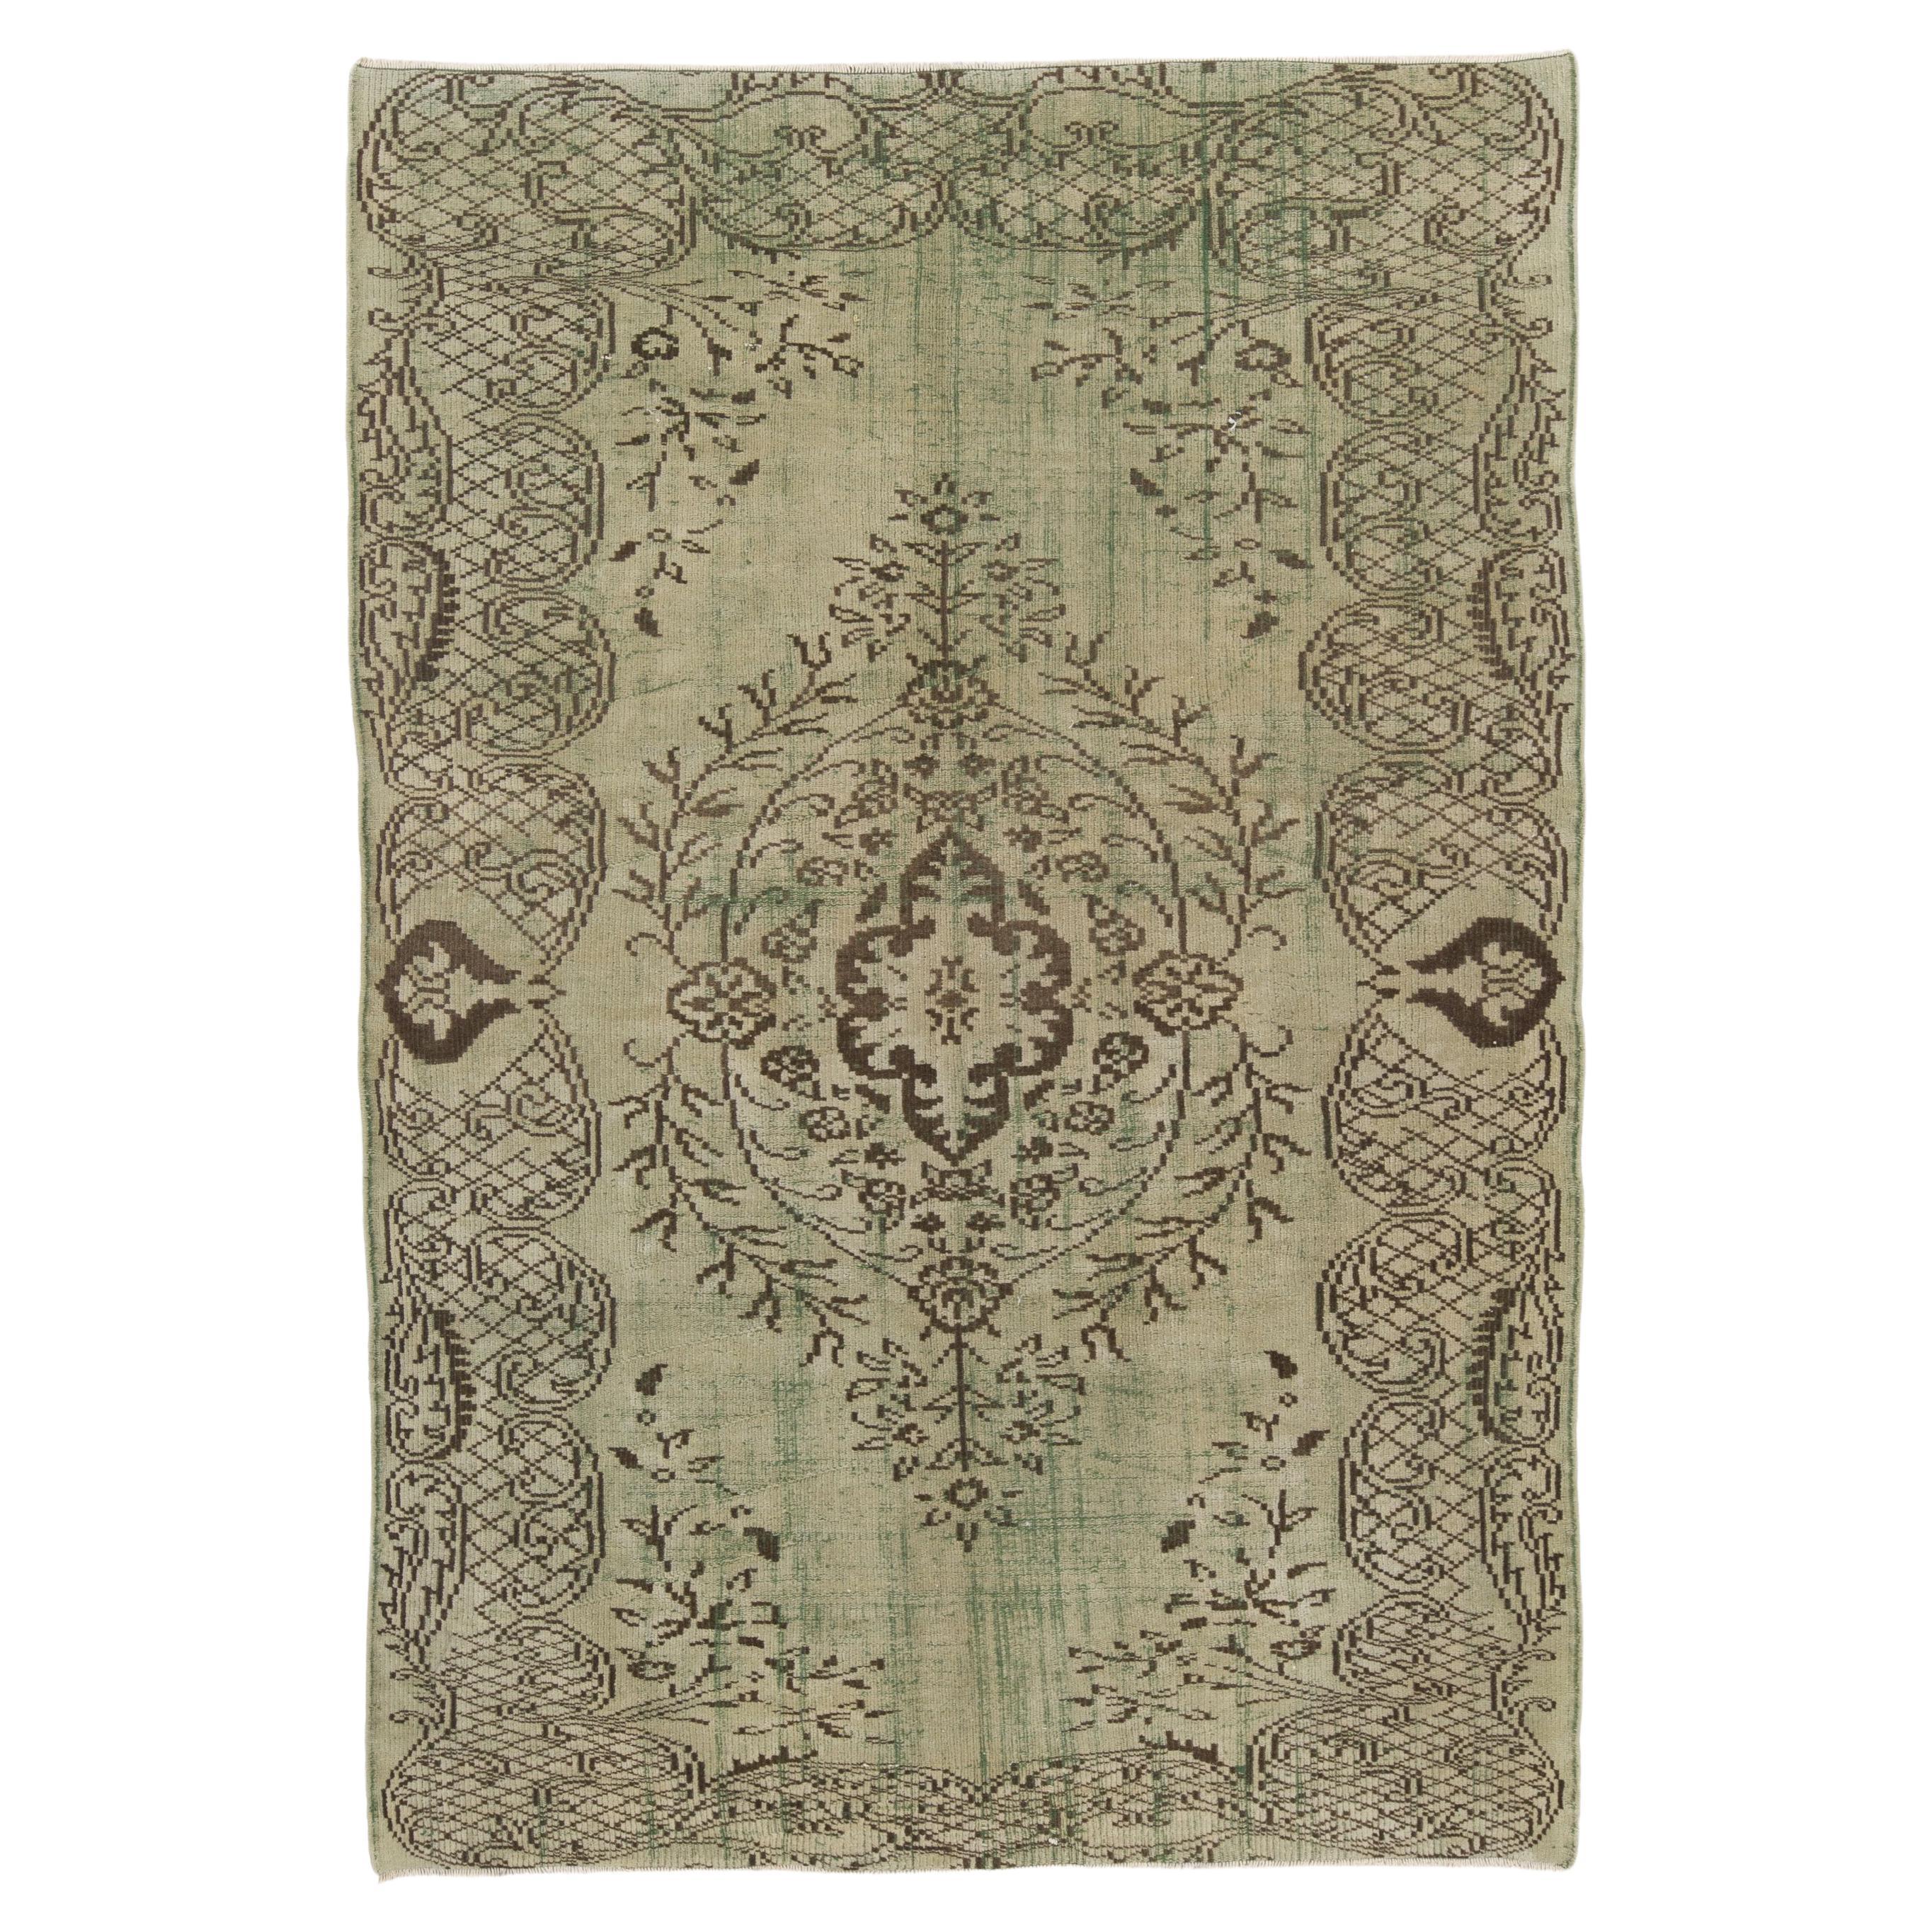 6x8.6 Ft Handgeknüpfter zentral- anatolischer Vintage-Teppich in grünen Farbtönen